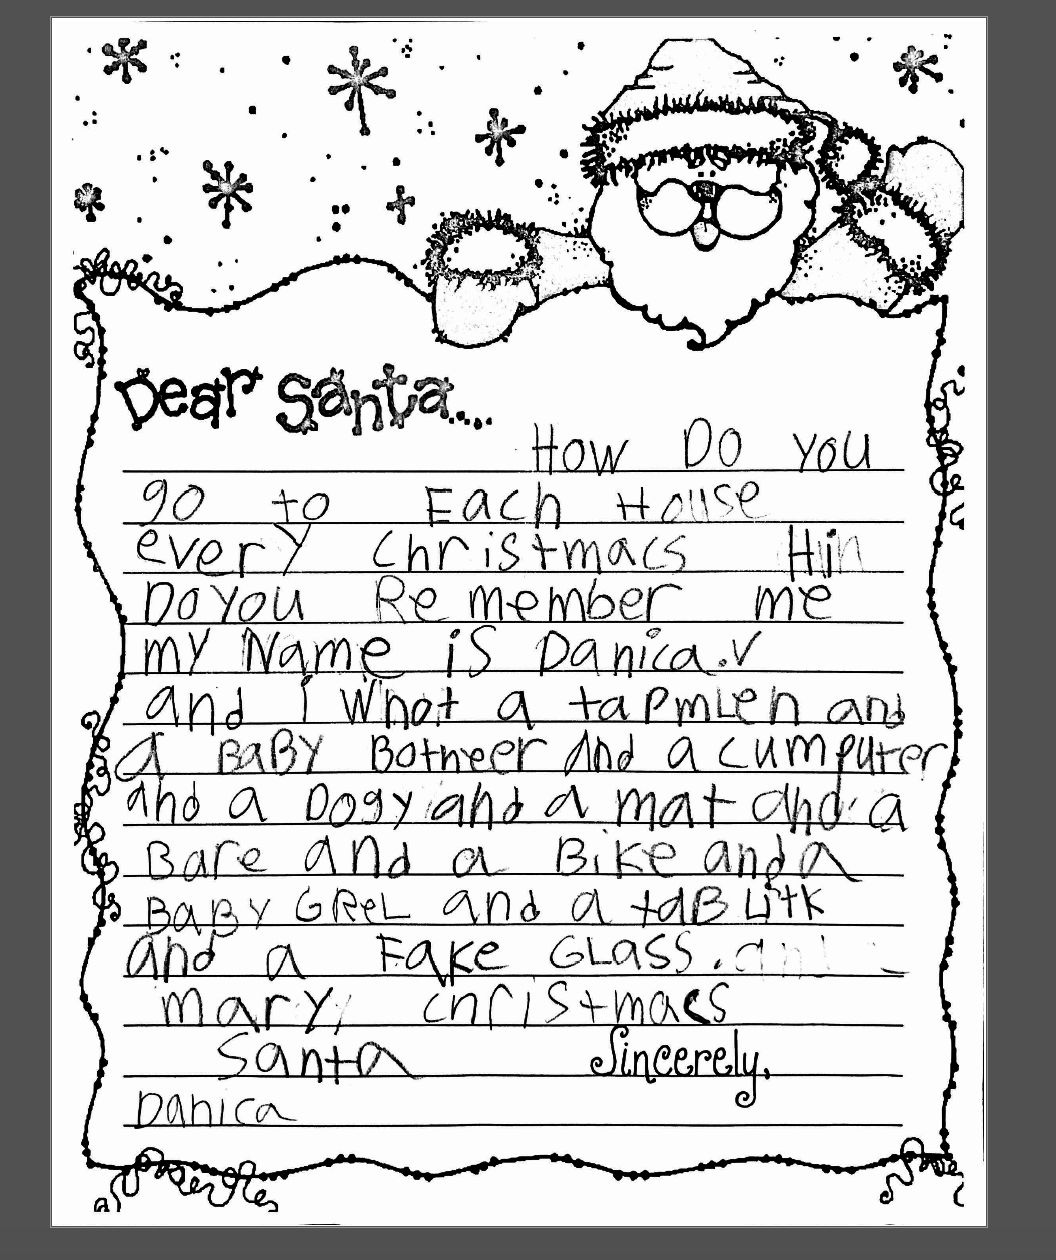 Danica's letter